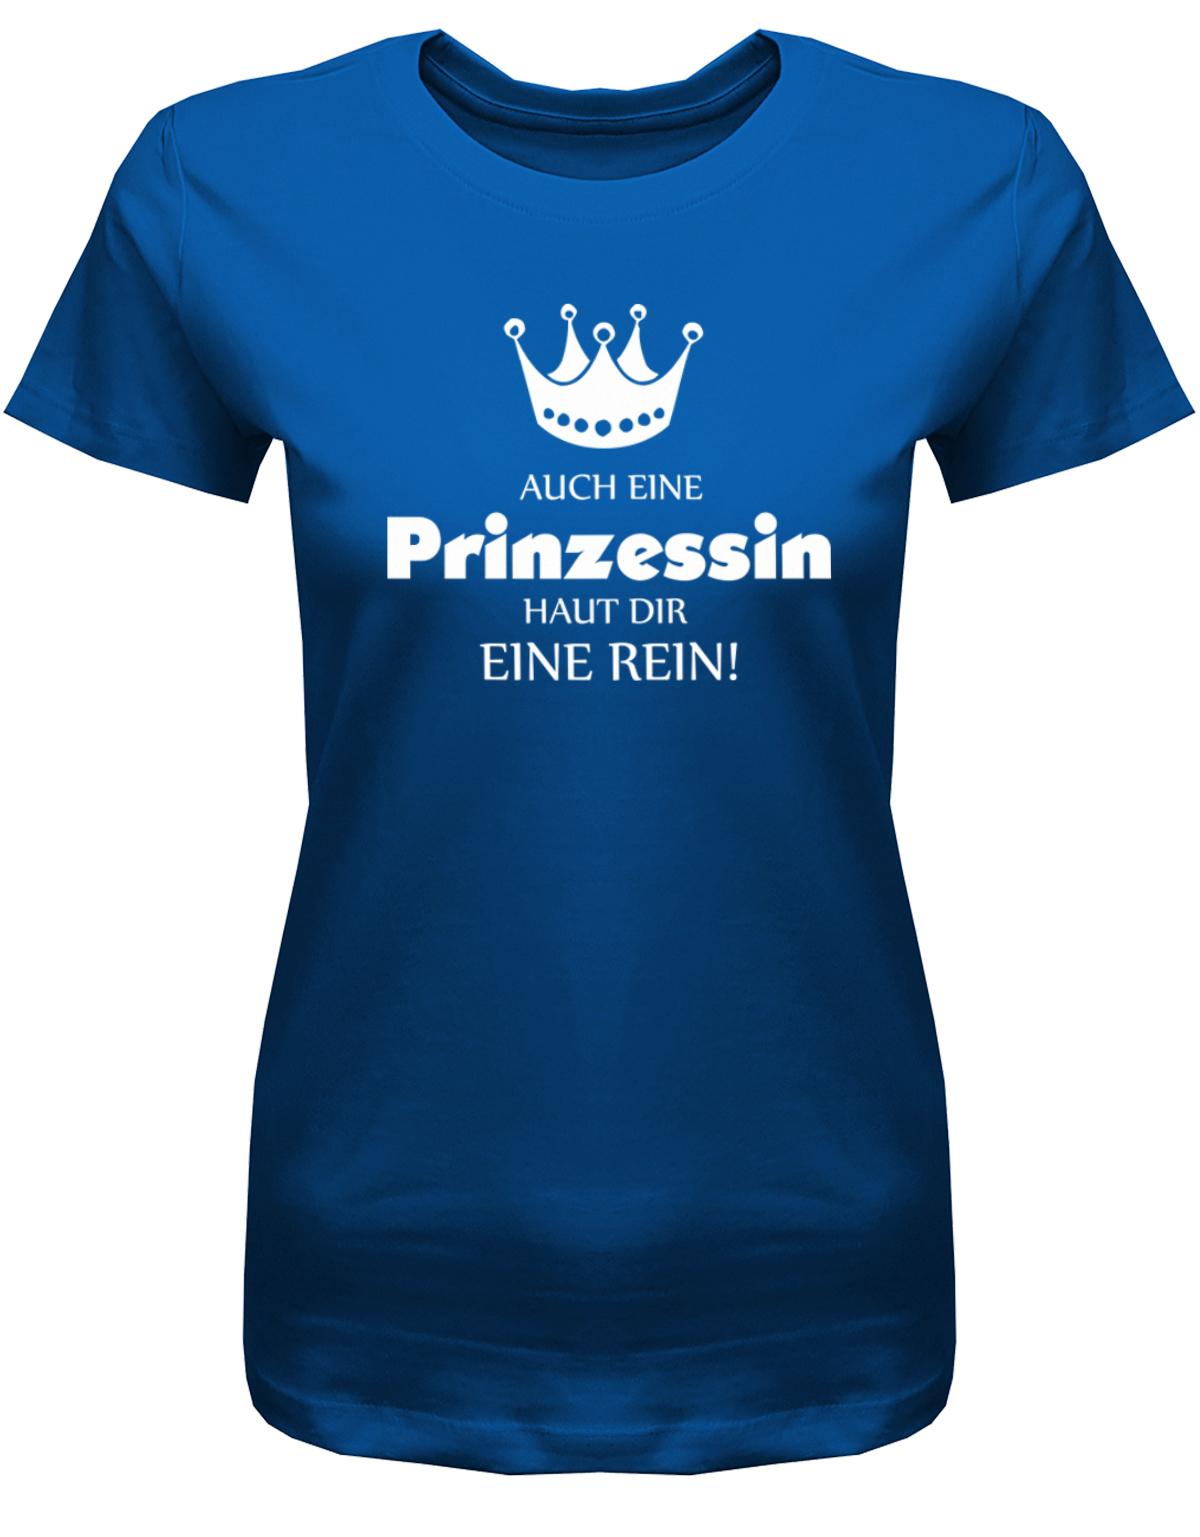 Auch-eine-Prinzessin-haut-dir-eine-rein-Damen-Shirt-Royalblau